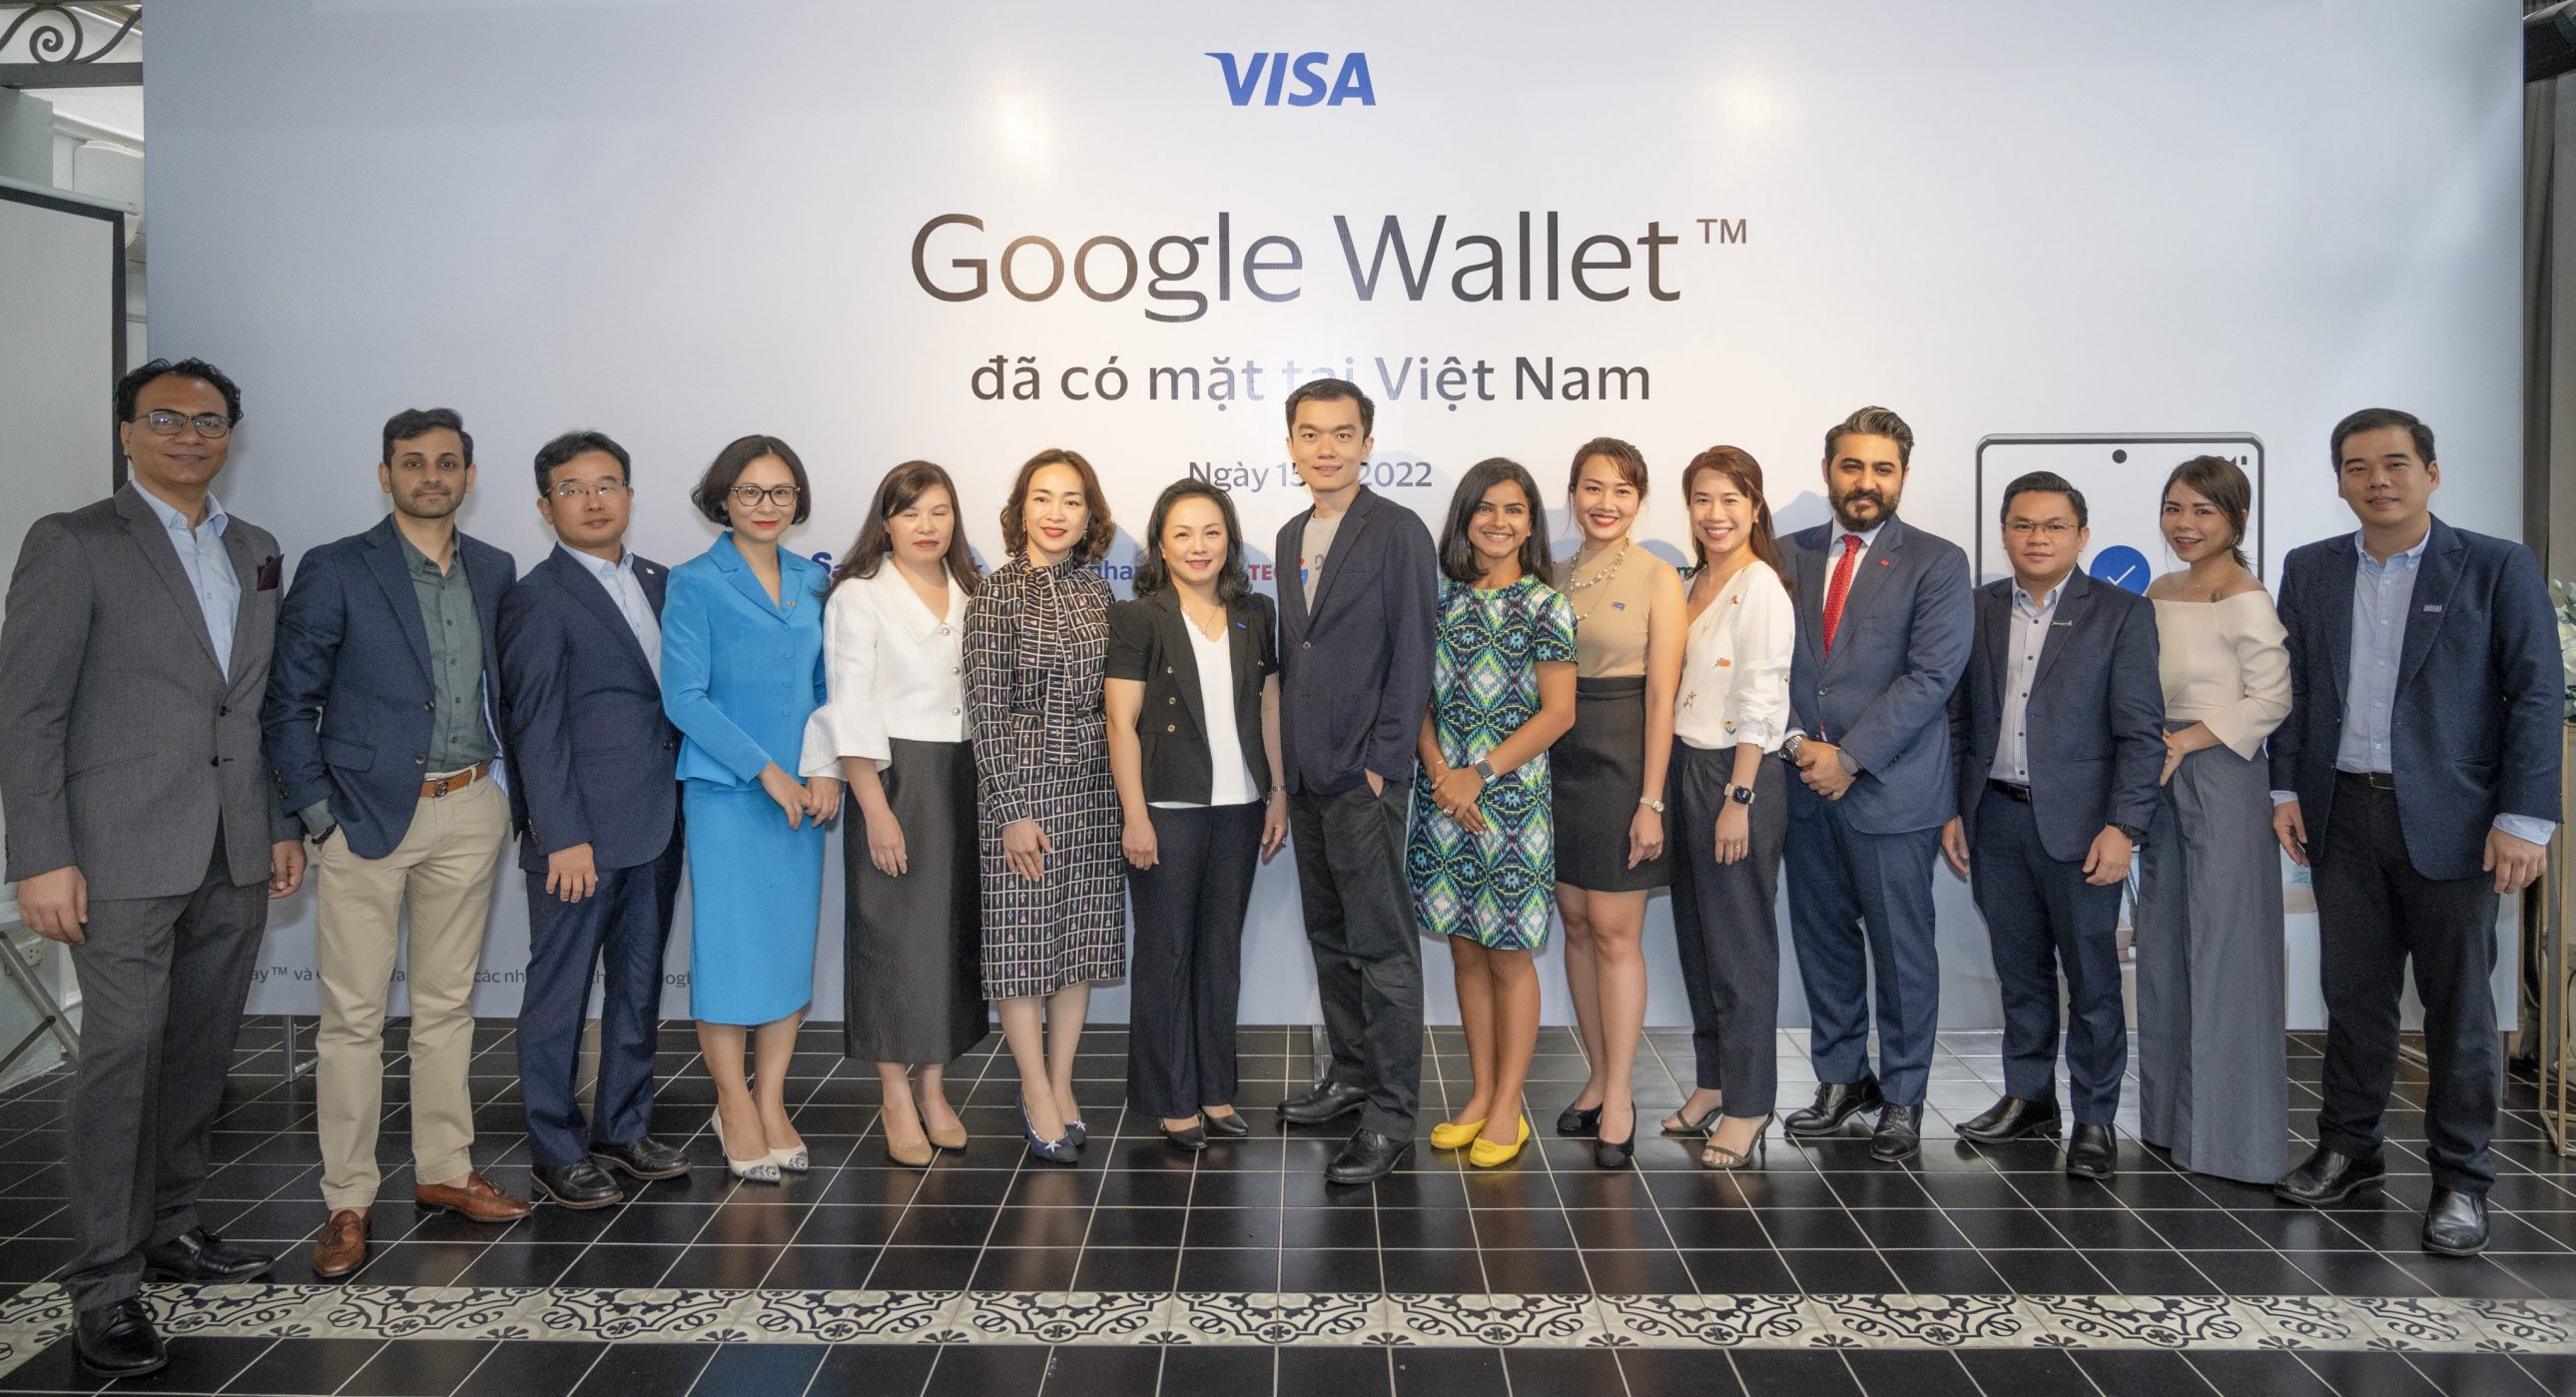 Google Wallet đã sử dụng được tại Việt Nam, thanh toán qua thẻ Visa 7 ngân hàng - Dại diện Visa Google và 7 ngân hàng phát hành thẻ